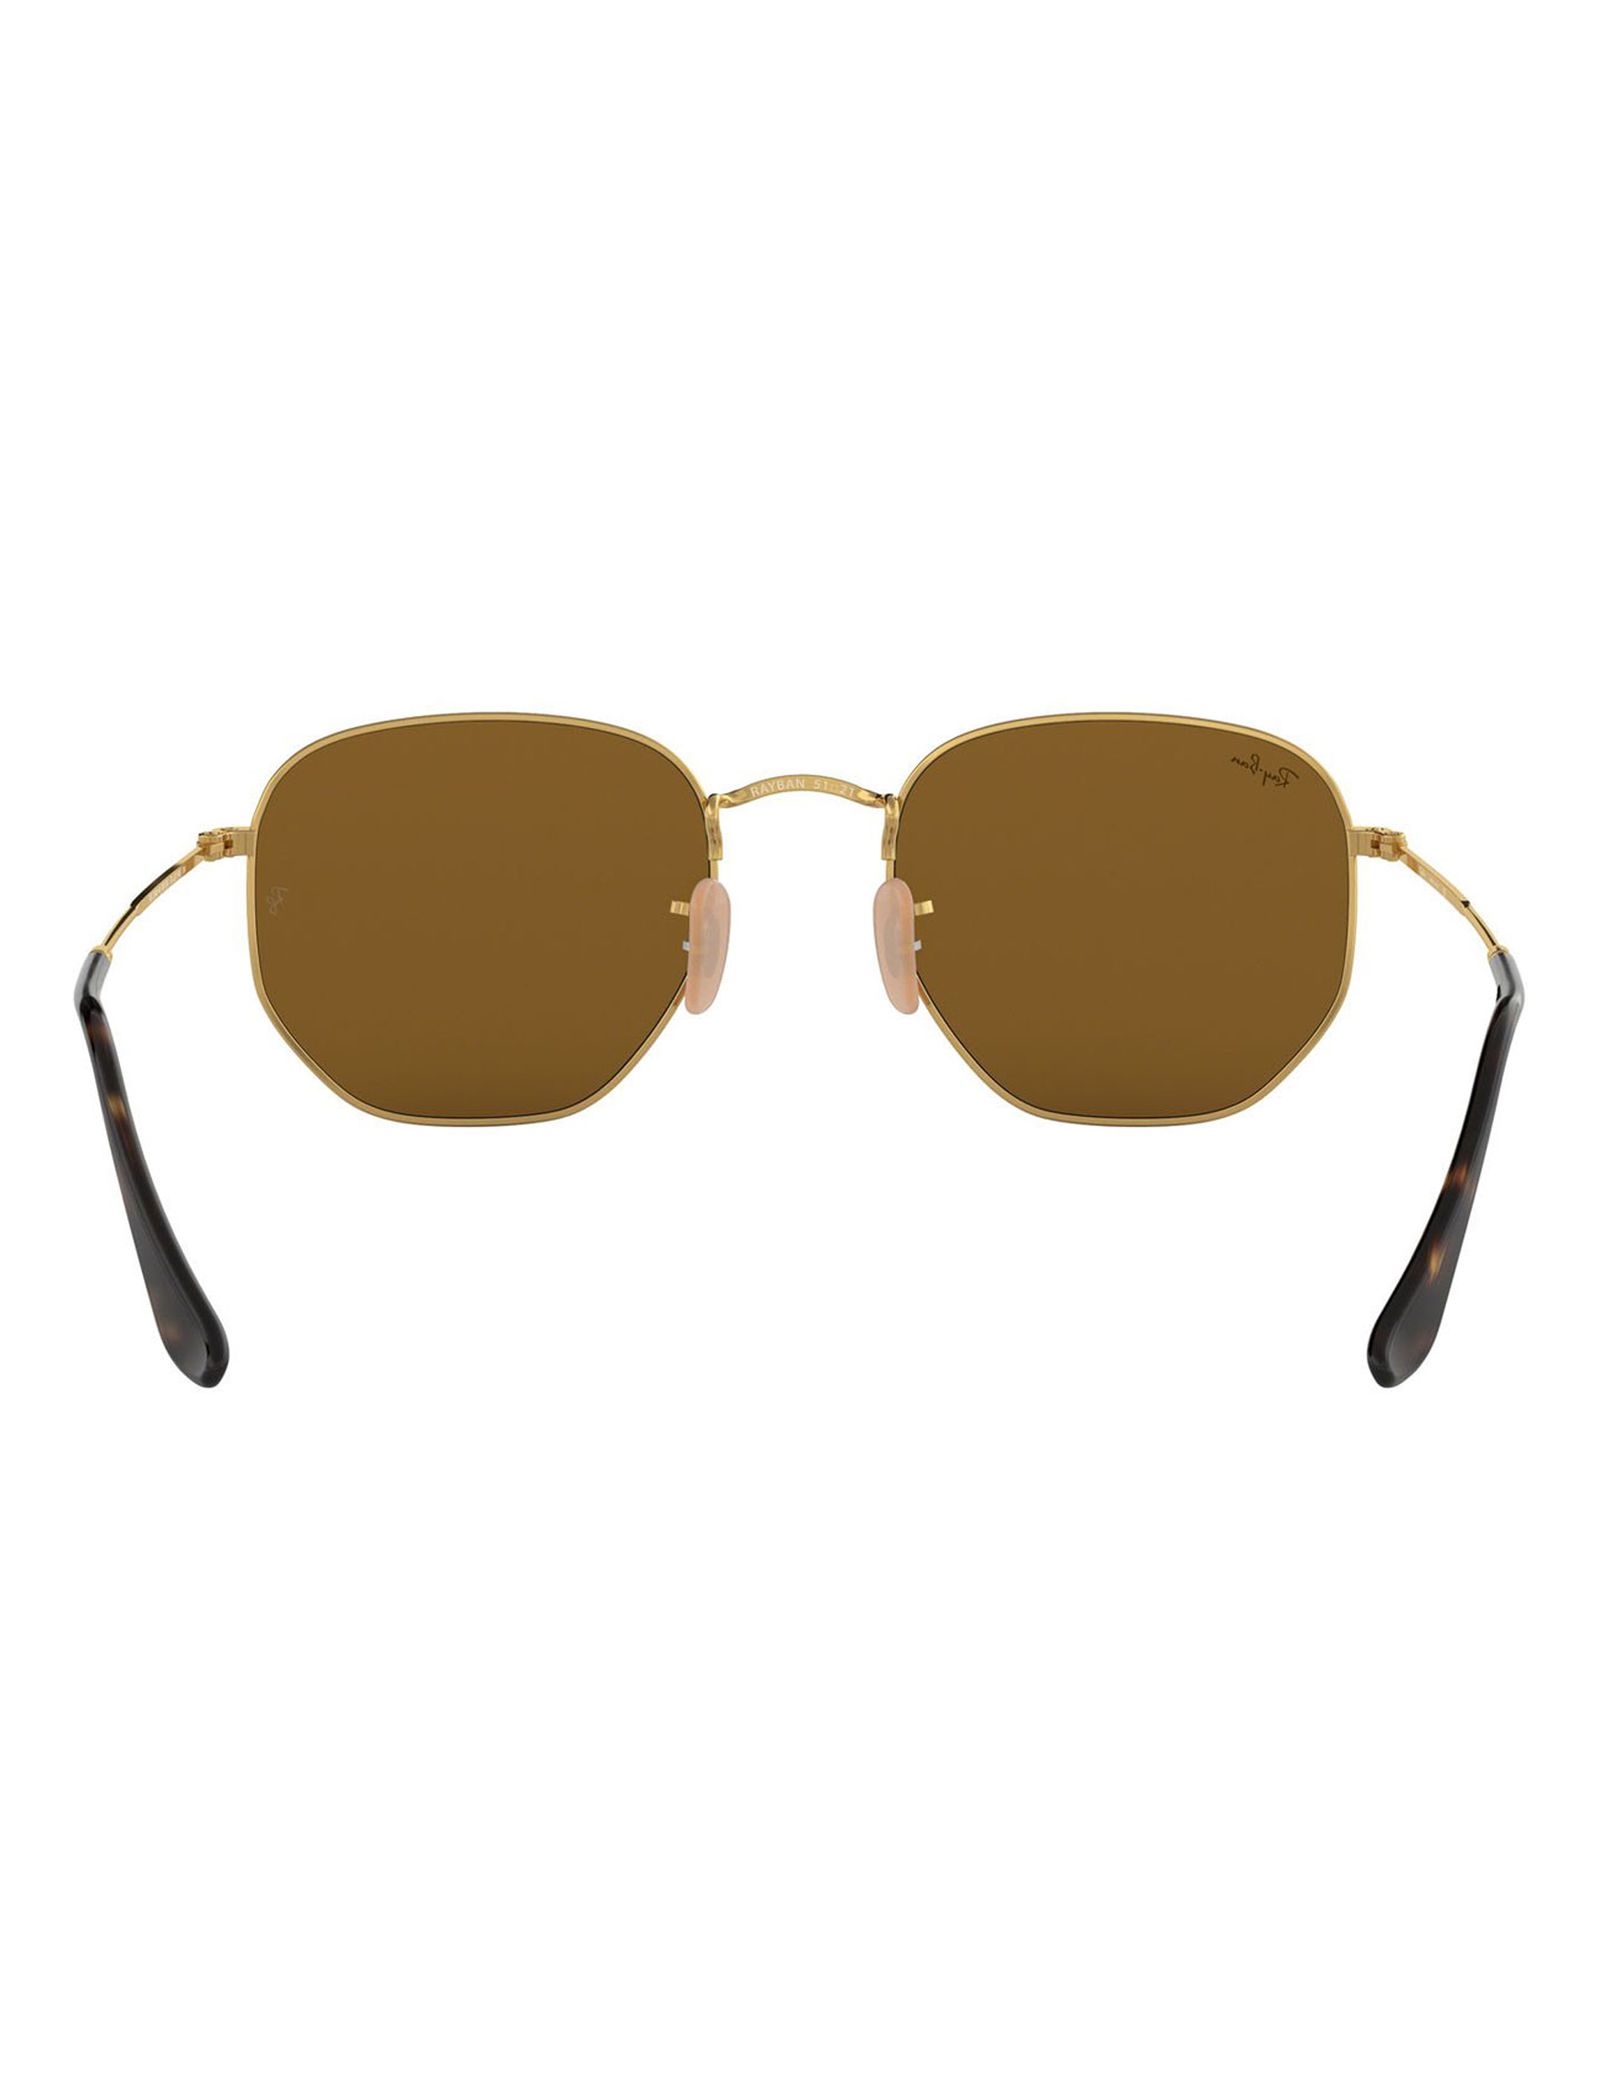 عینک آفتابی ری بن مدل 3548-001/93-54 - طلایی - 5